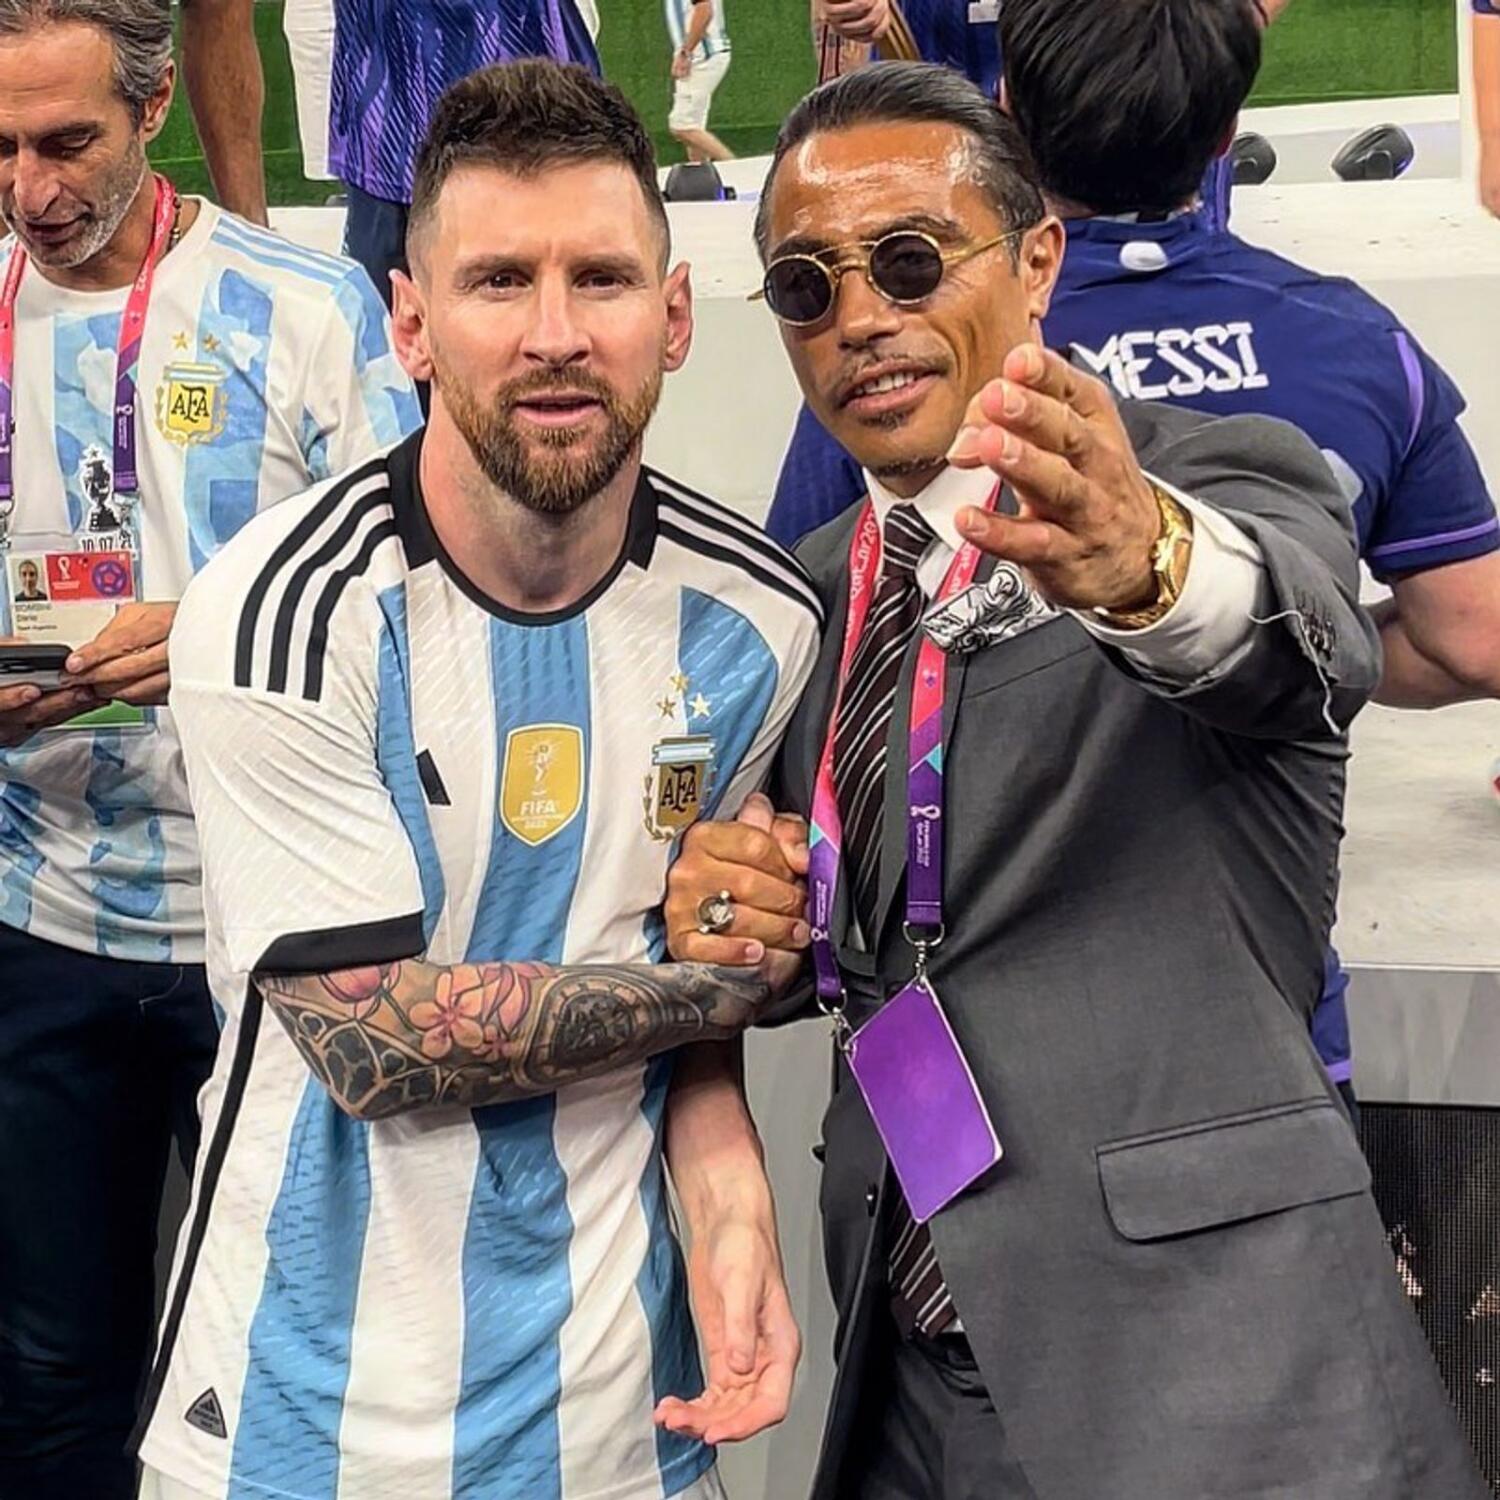 "Thánh rắc muối" chèo kéo Messi để được chụp ảnh đăng lên mạng xã hội sau trận chung kết. Ảnh: Twitter